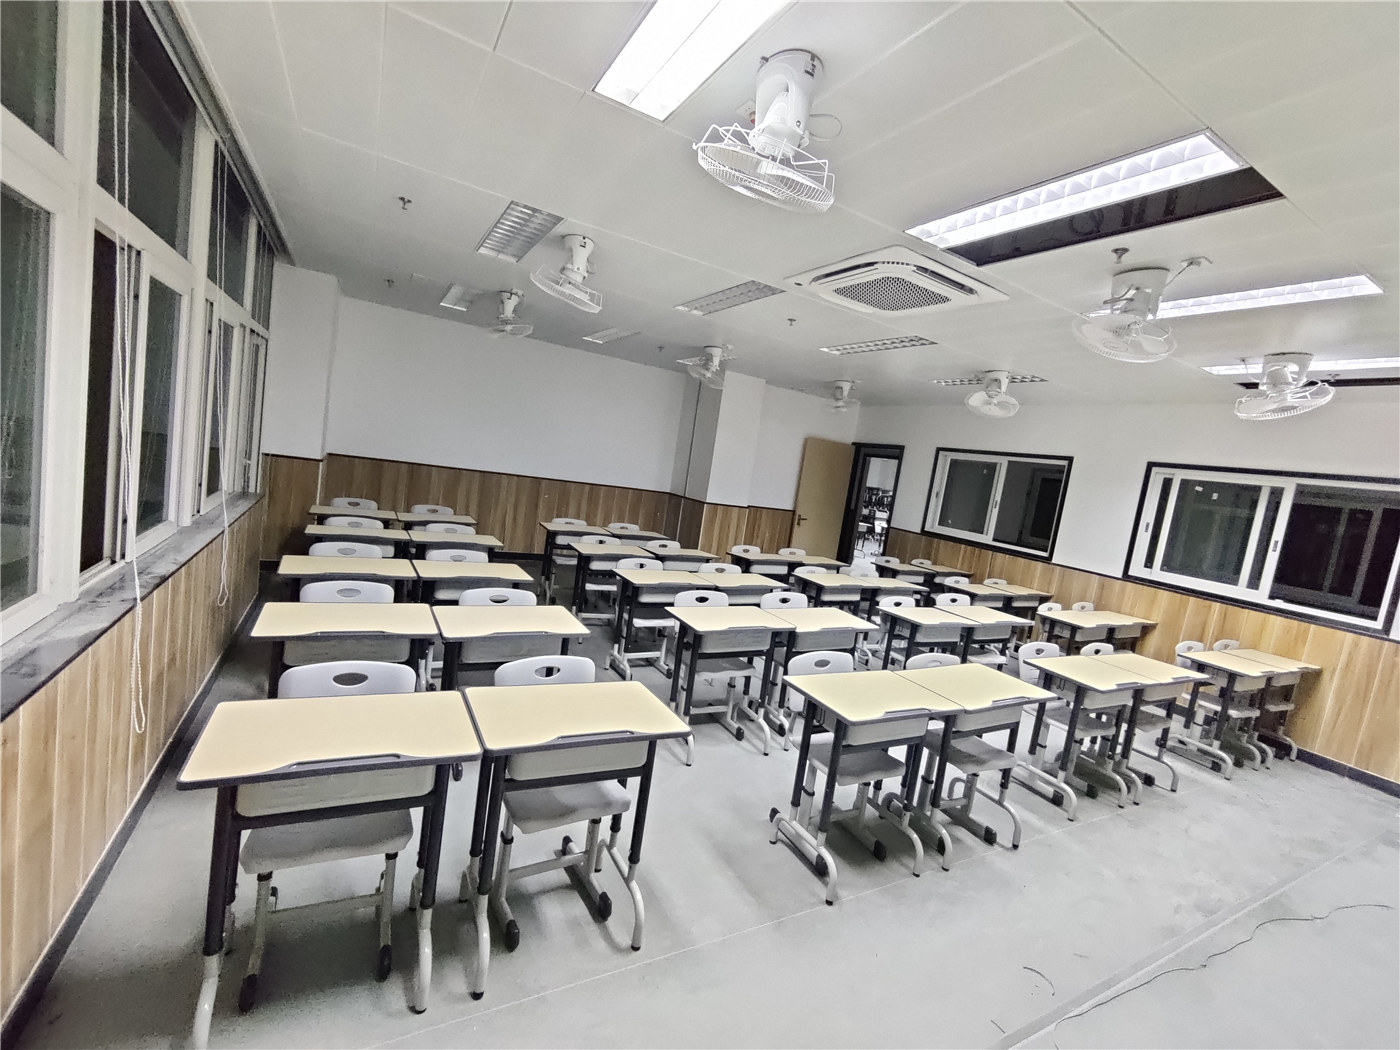 Koristite visokokvalitetne studentske stolove i stolice da povećate efikasnost učionice101